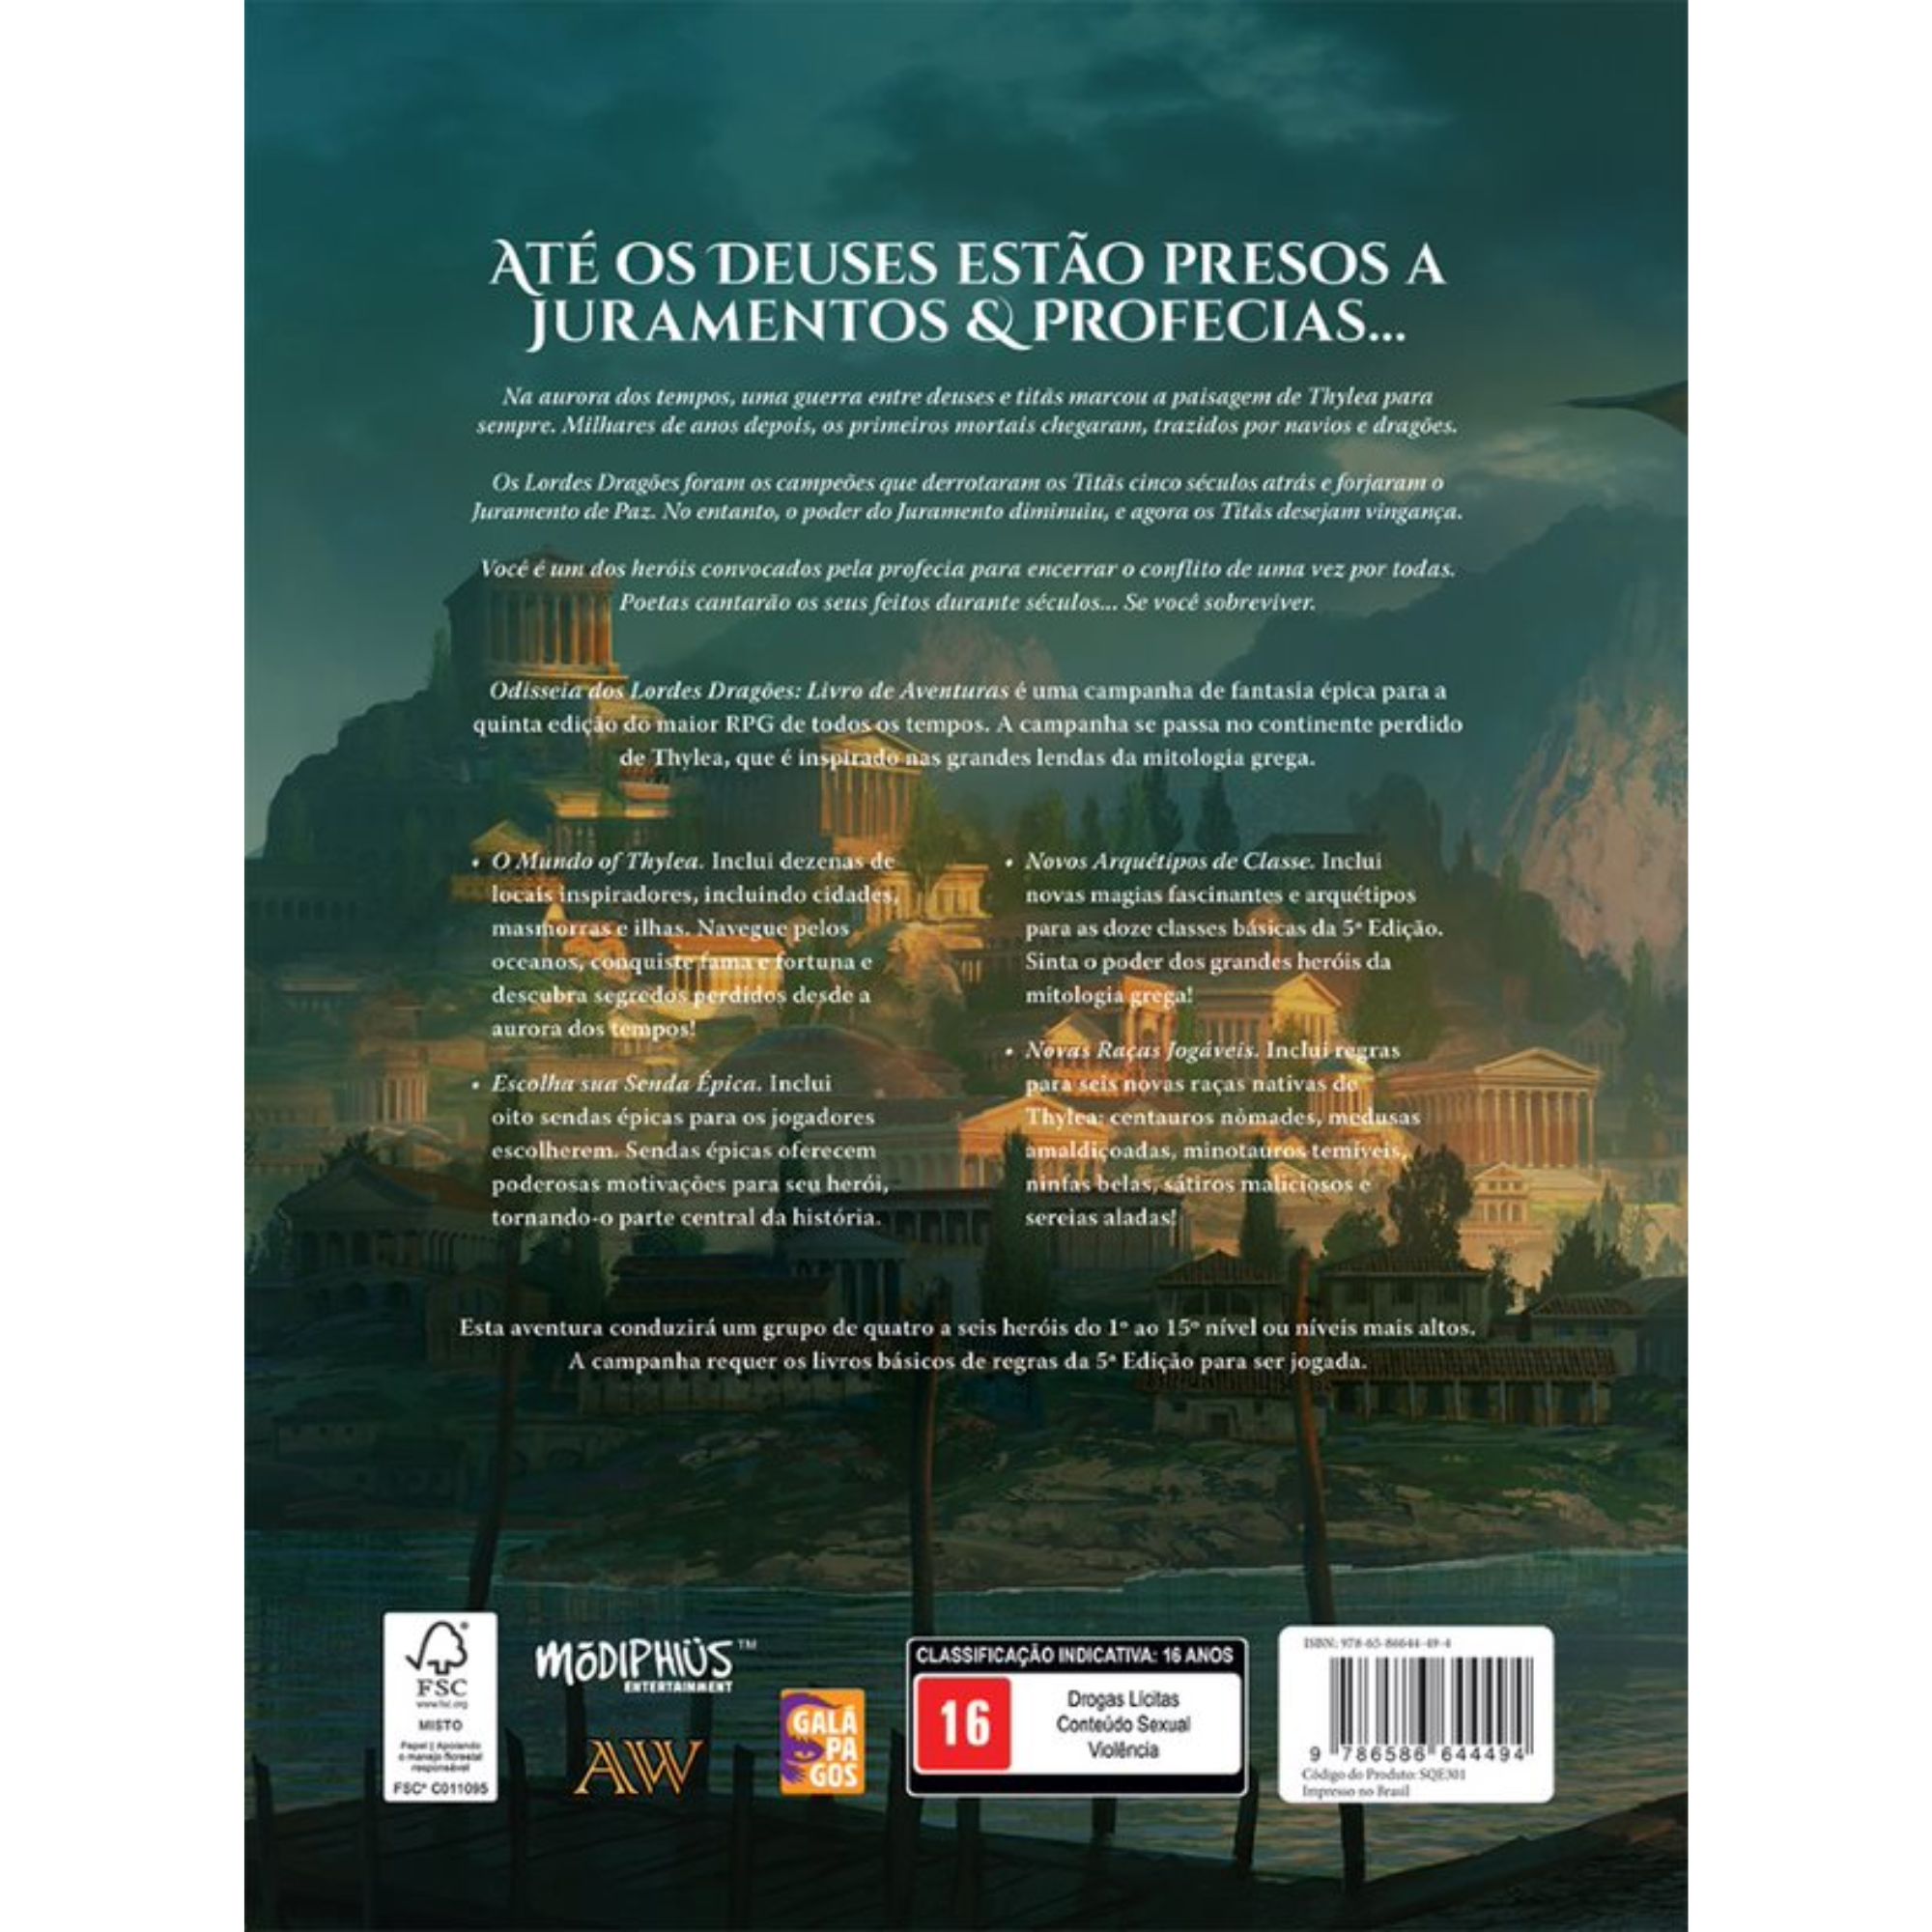 Dragão Brasil 185 (Especial), PDF